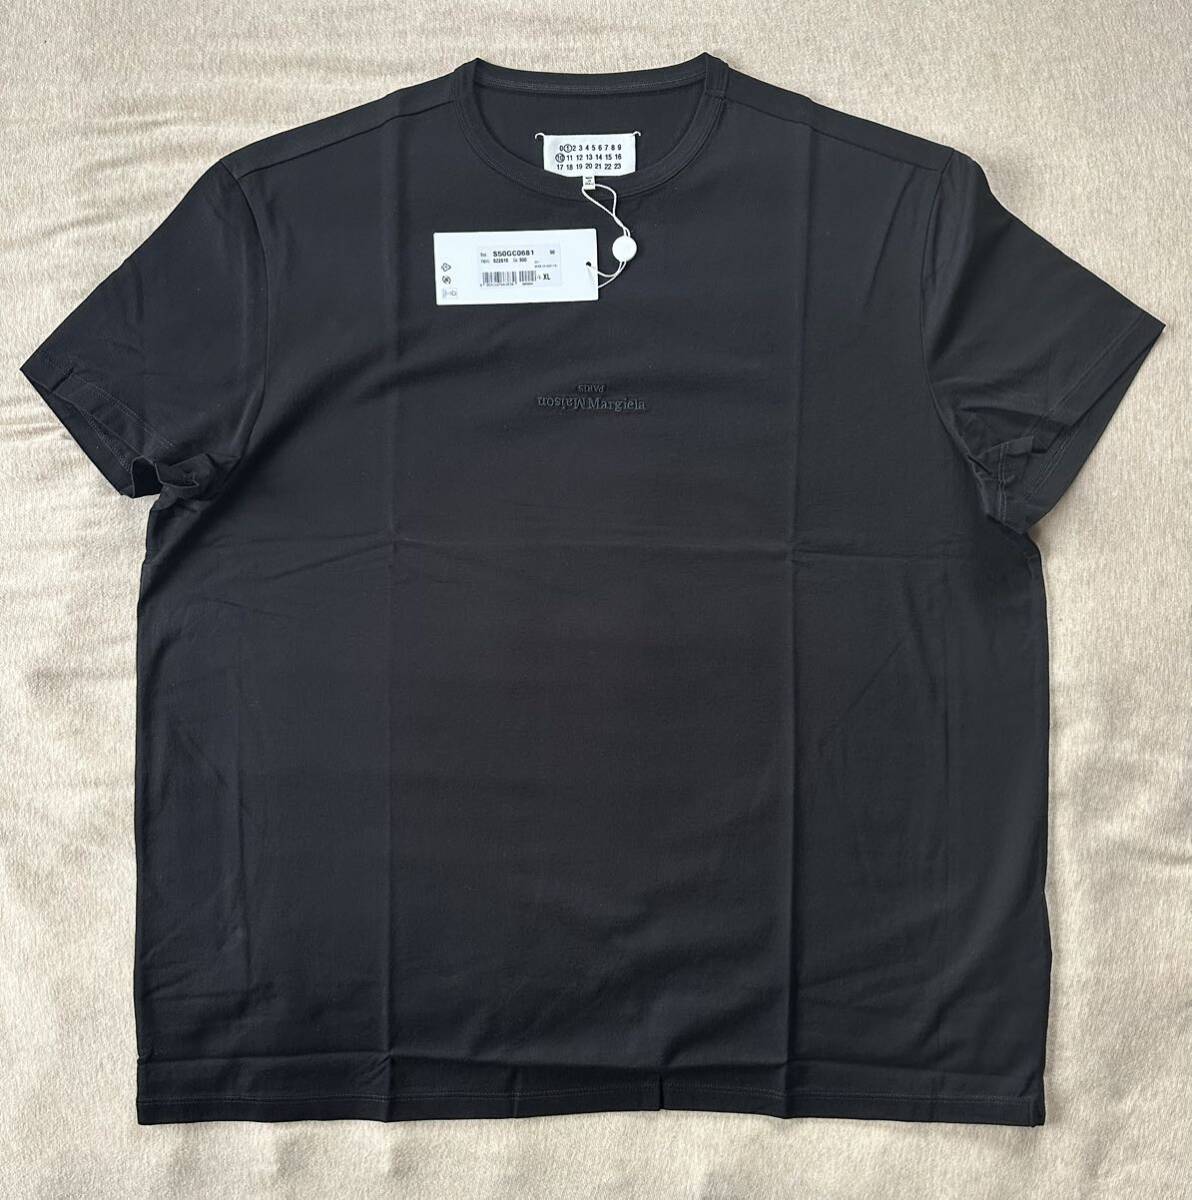 黒XL新品 メゾンマルジェラ リバースロゴ Tシャツ 黒 刺繍 半袖 カットソー 23SS size XL 52 Maison Margiela 1 10 メンズ オールブラック